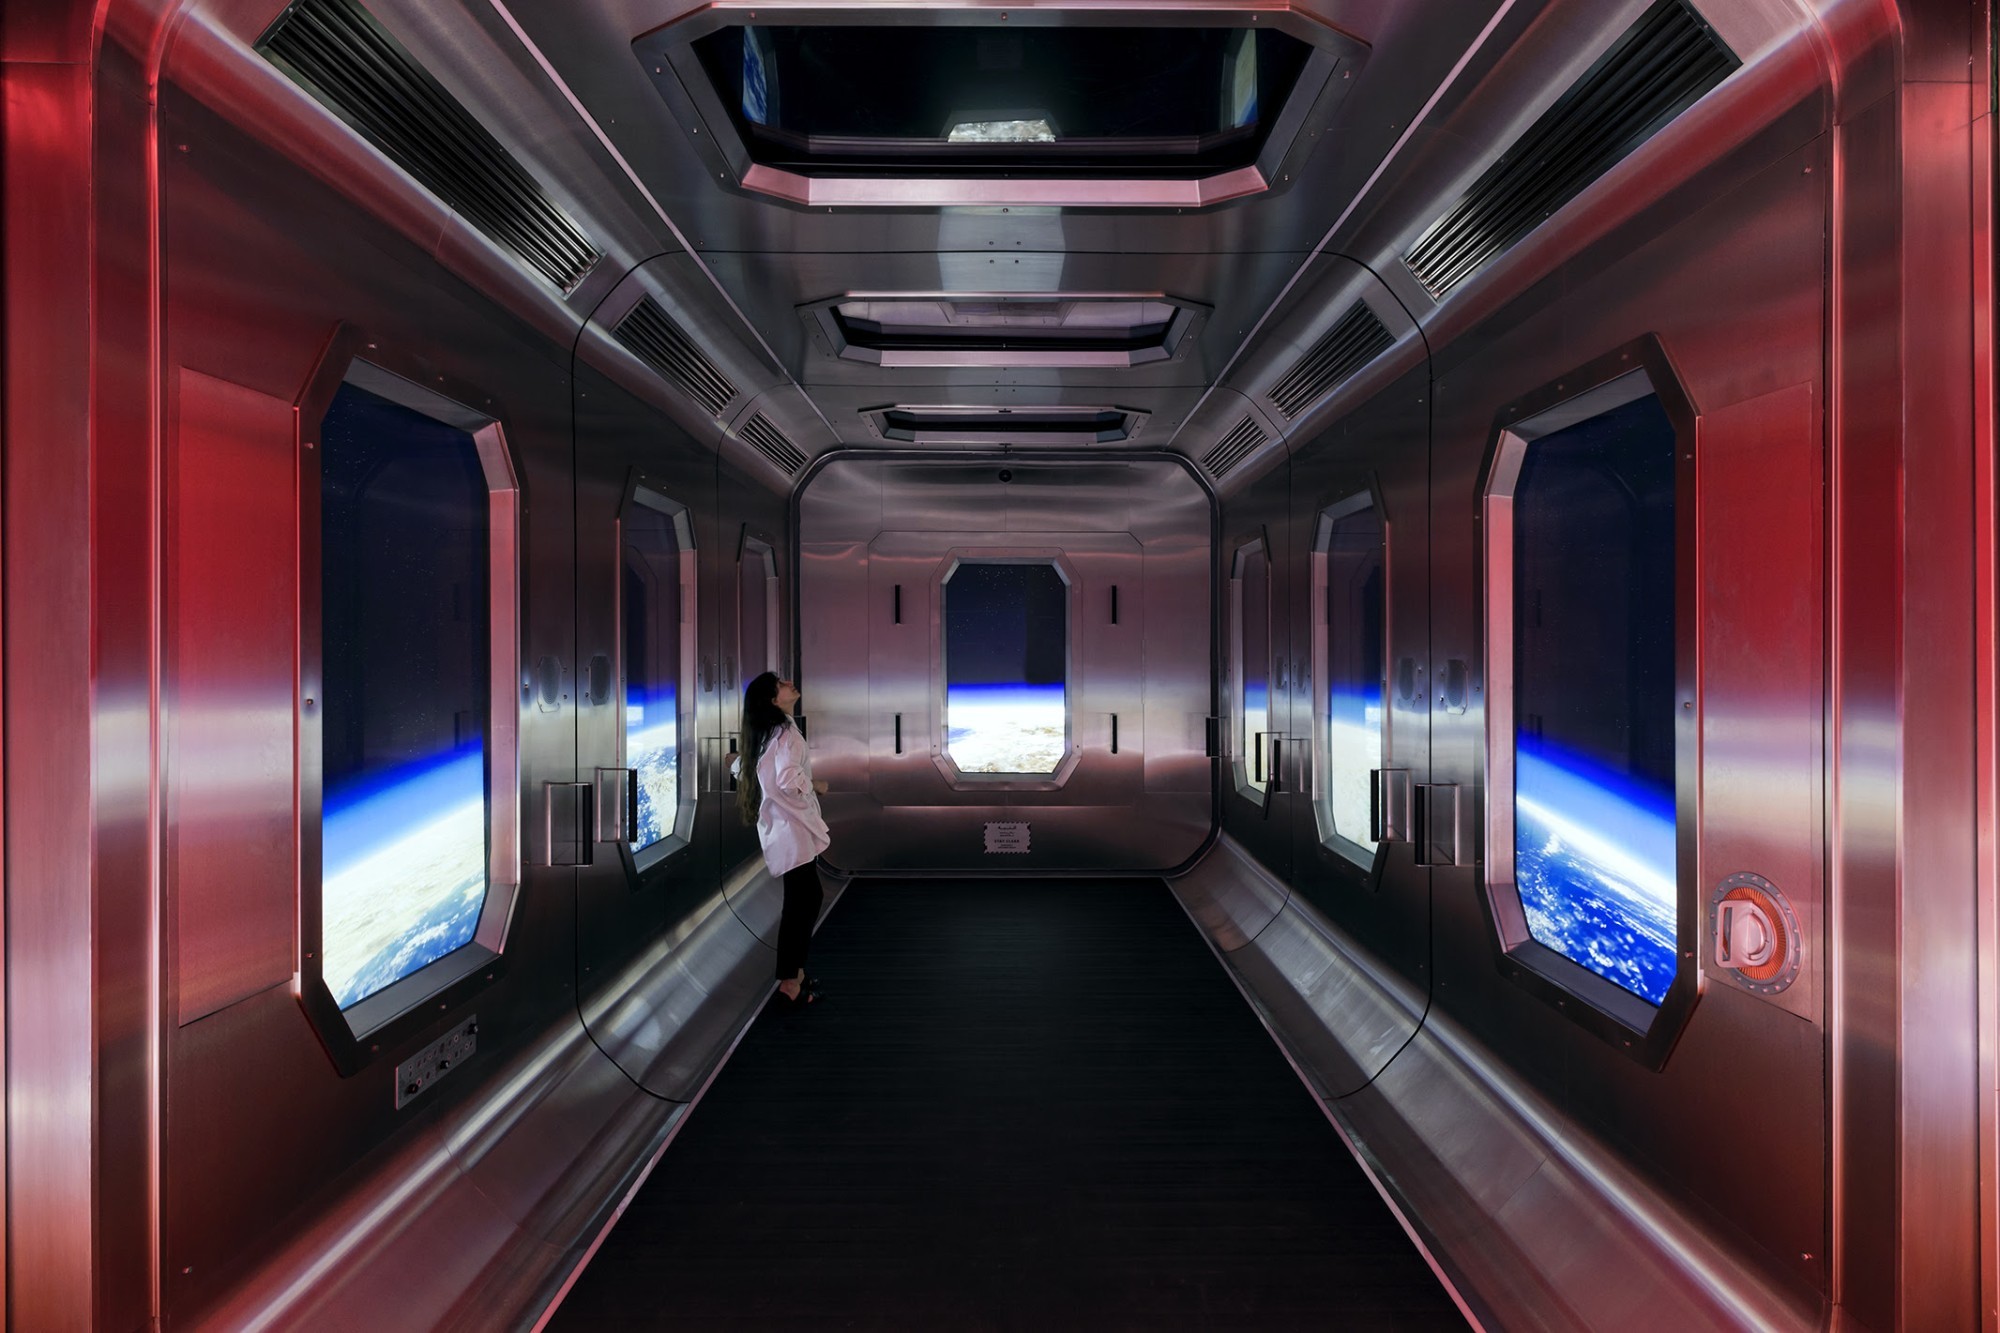 L'exposition « Journey of the Pioneers » catapulte les visiteurs du musée en 2071 sur la station spatiale OSS Hope par une course d'ascenseur rapide, mise en scène comme une capsule spatiale filmée.